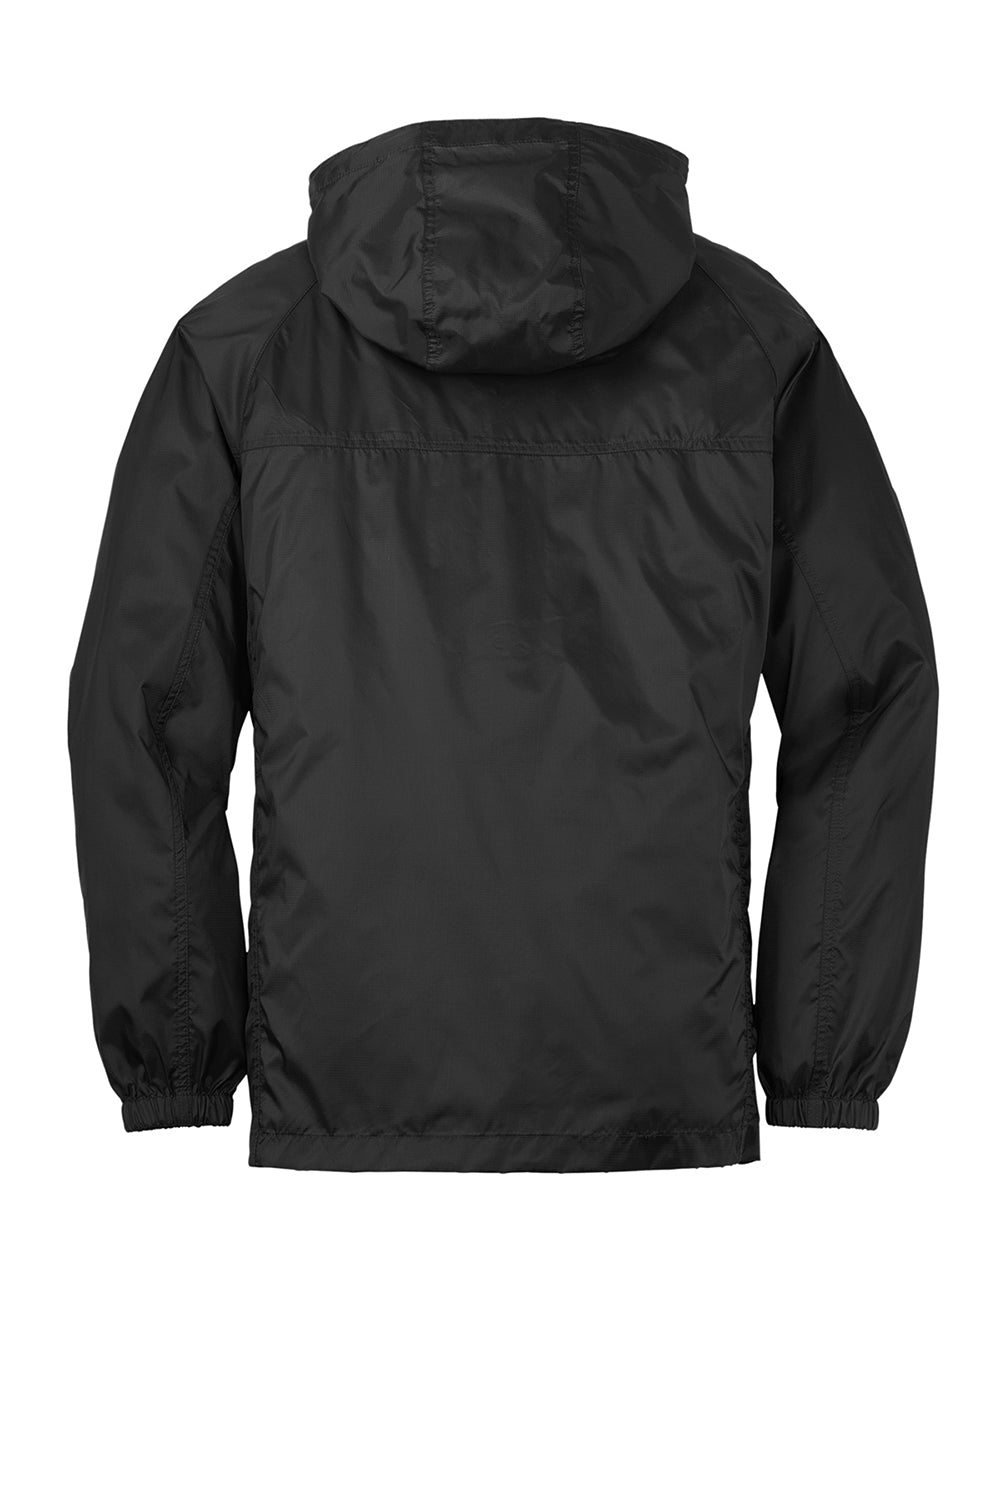 Eddie Bauer EB500 Mens Packable Wind Resistant Full Zip Hooded Jacket Black Flat Back